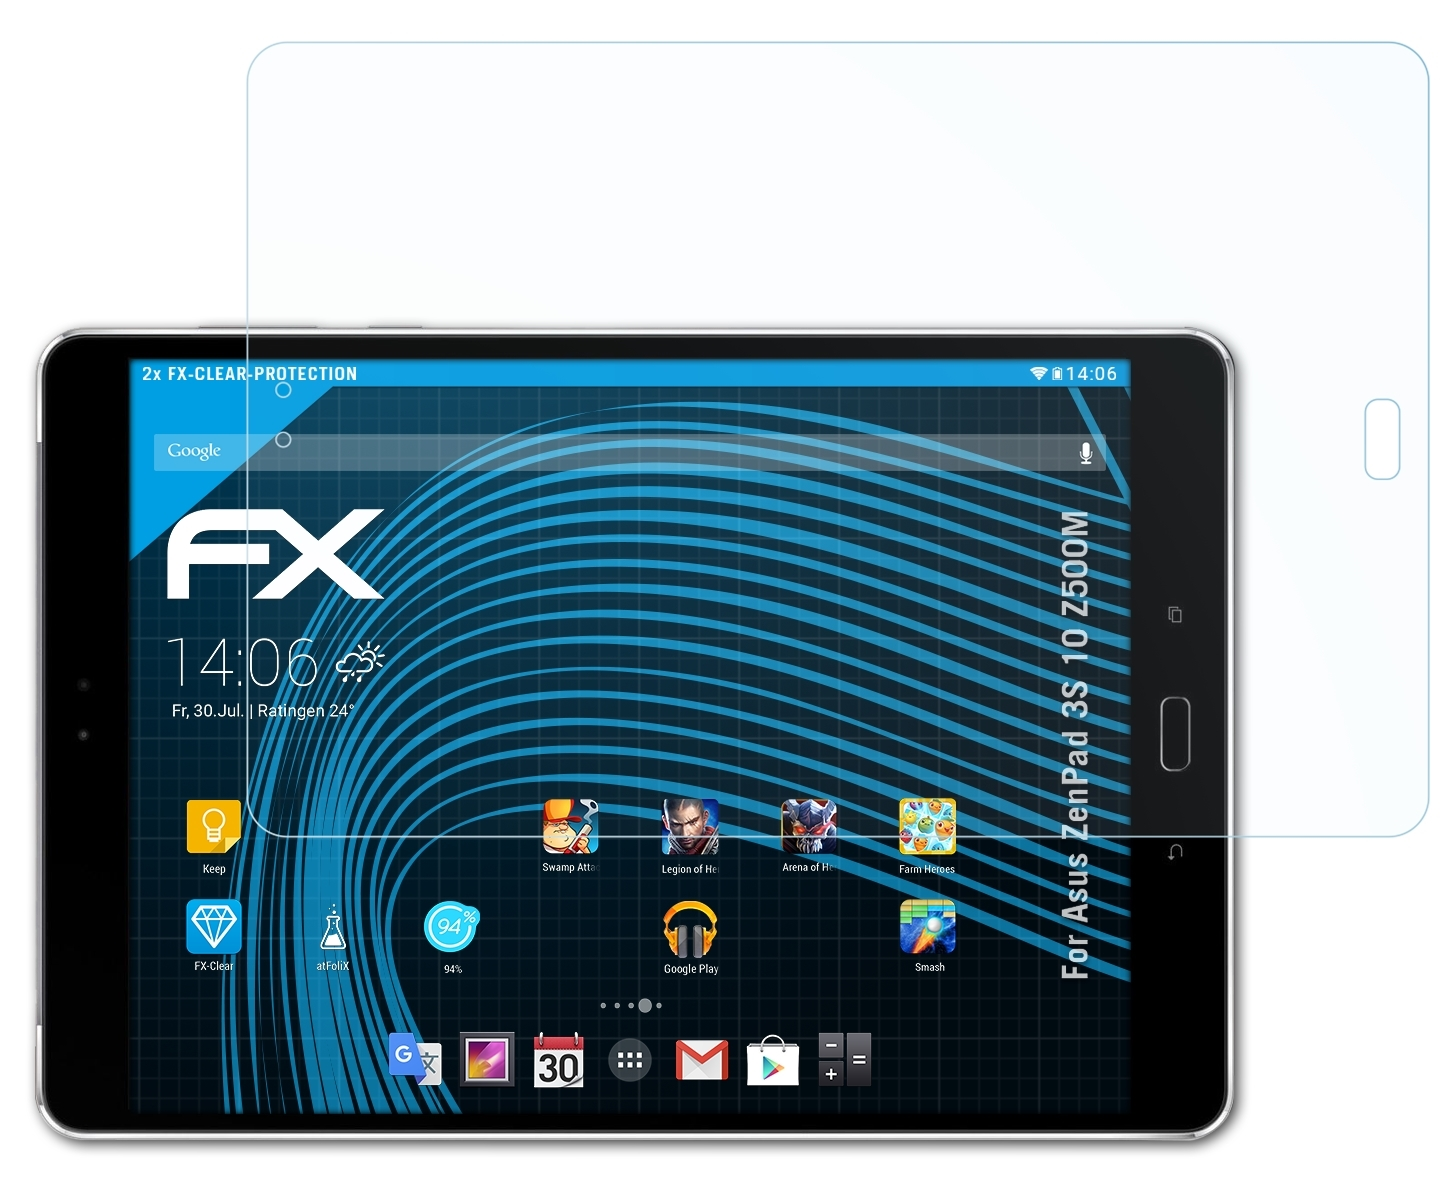 2x ZenPad FX-Clear Displayschutz(für 3S Asus ATFOLIX (Z500M)) 10